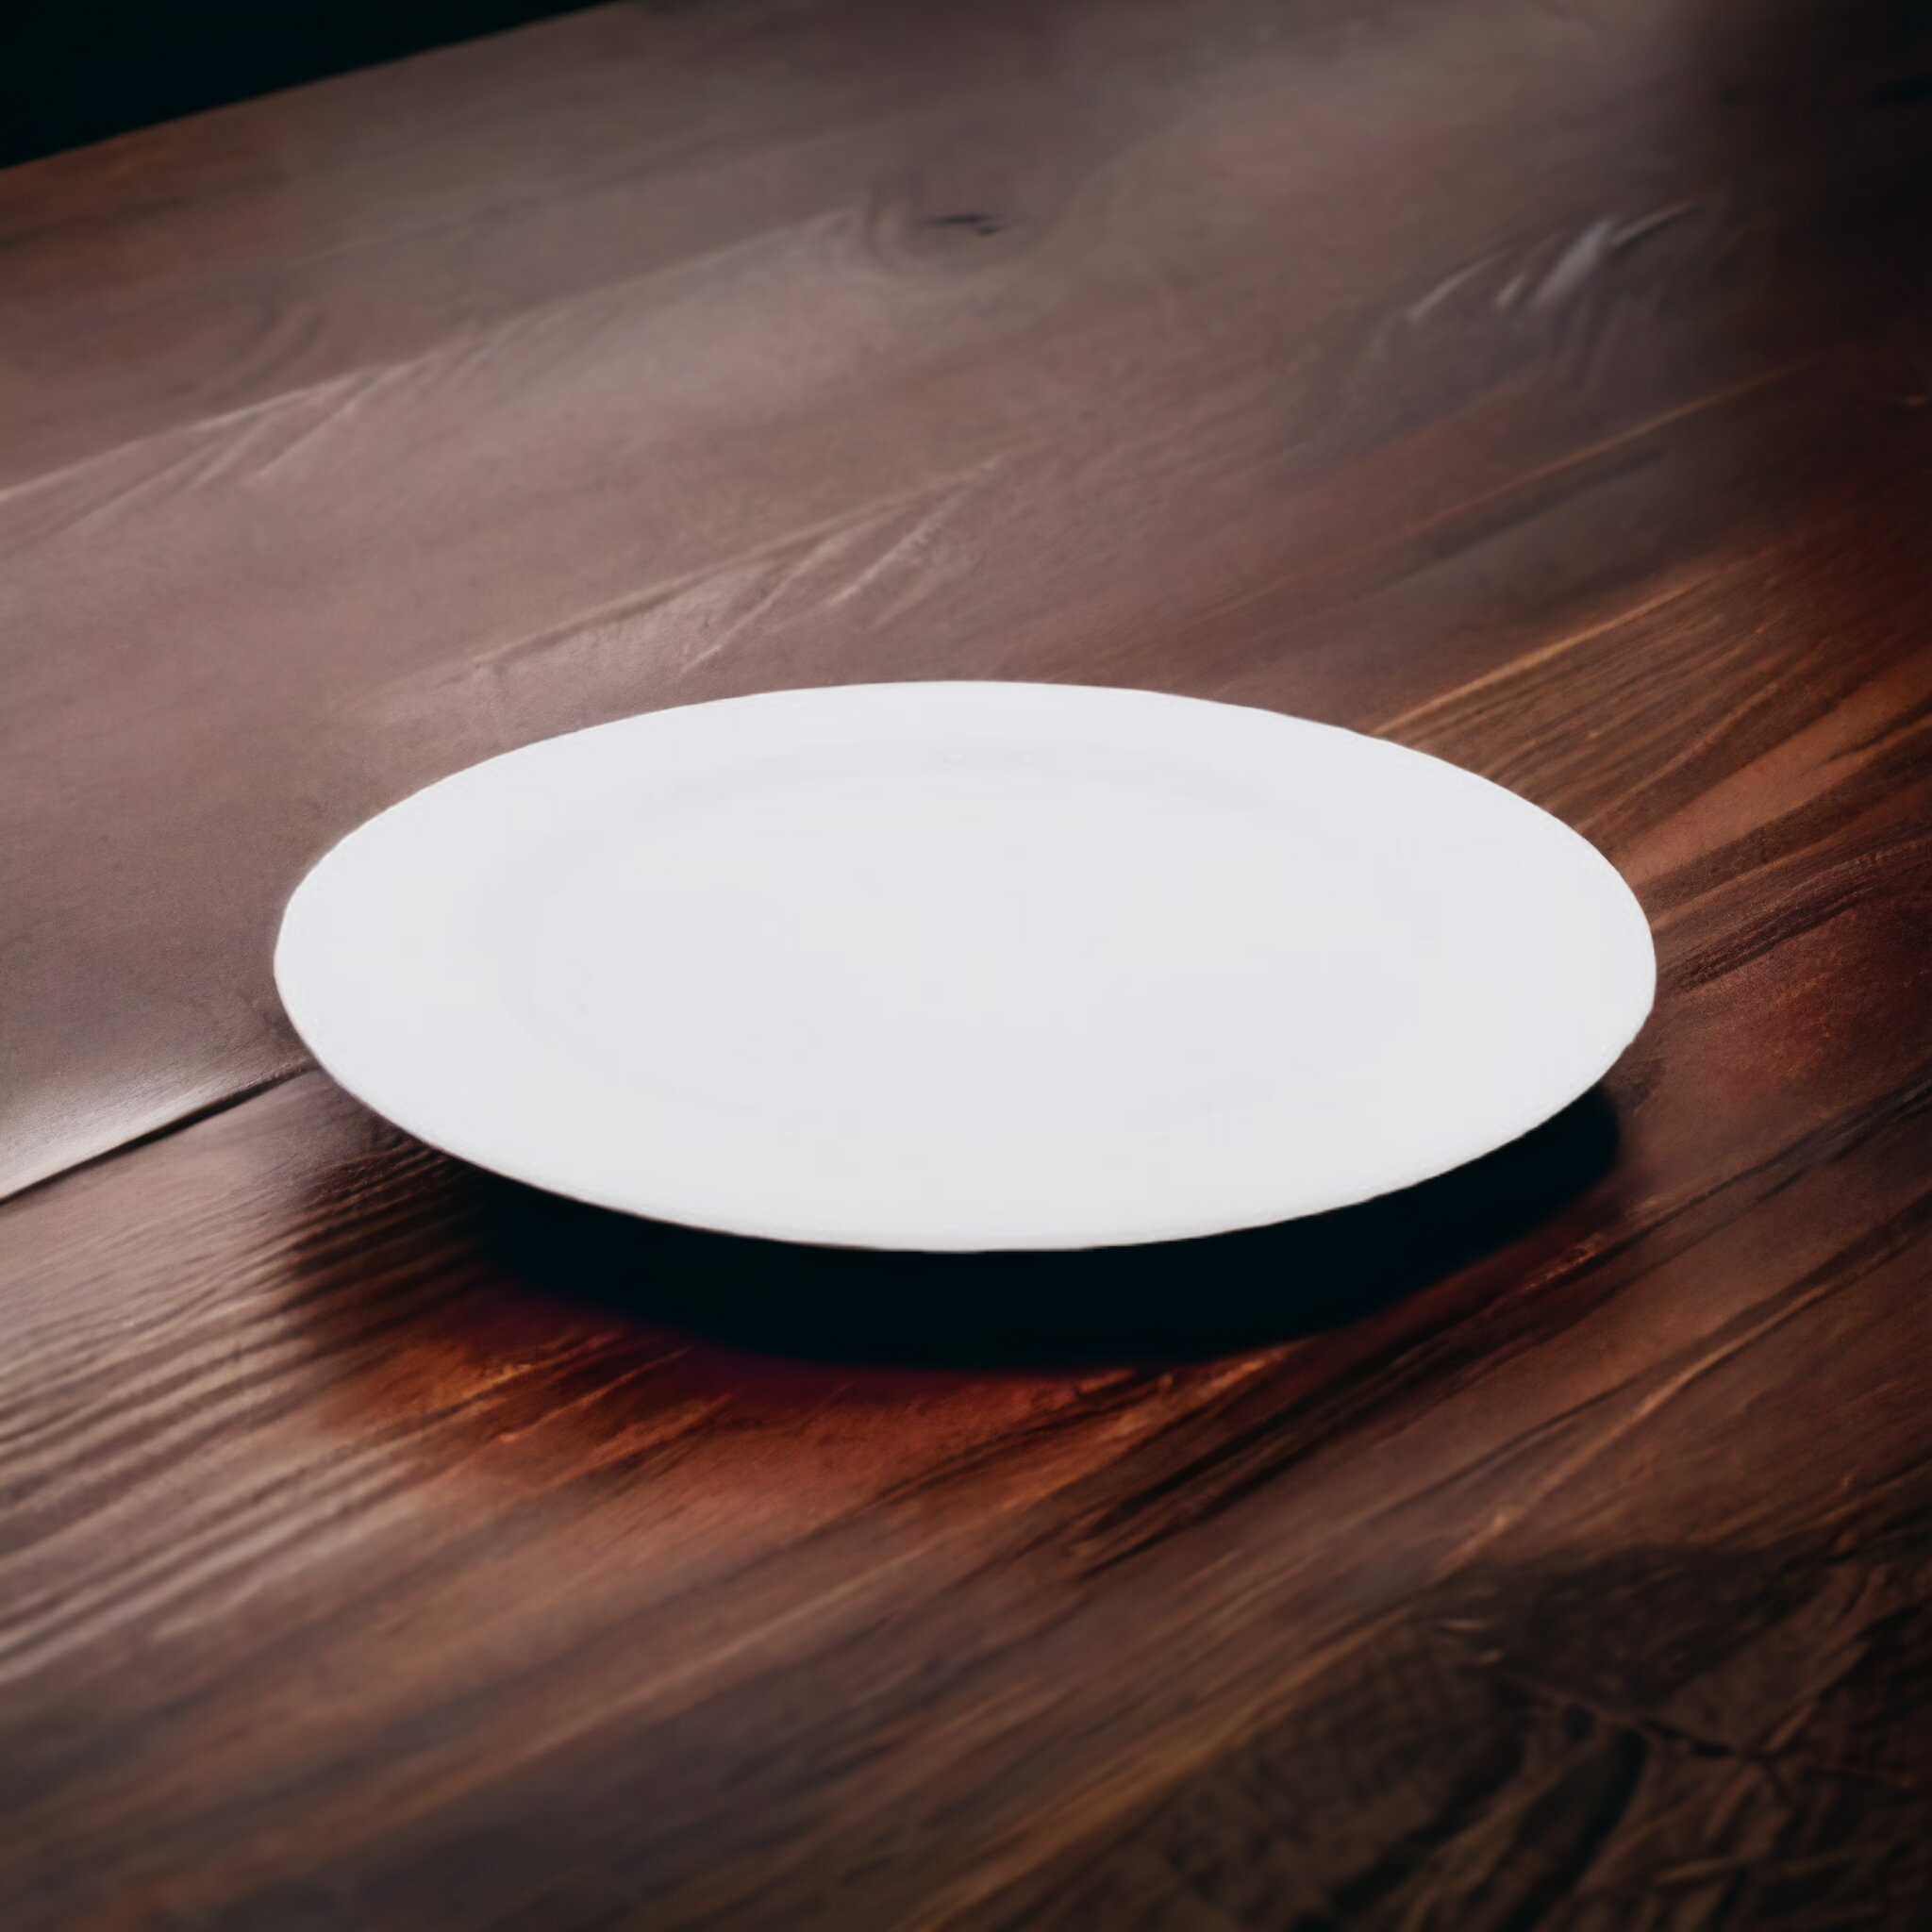 Melamine Dinner Plate 25cm White 13045